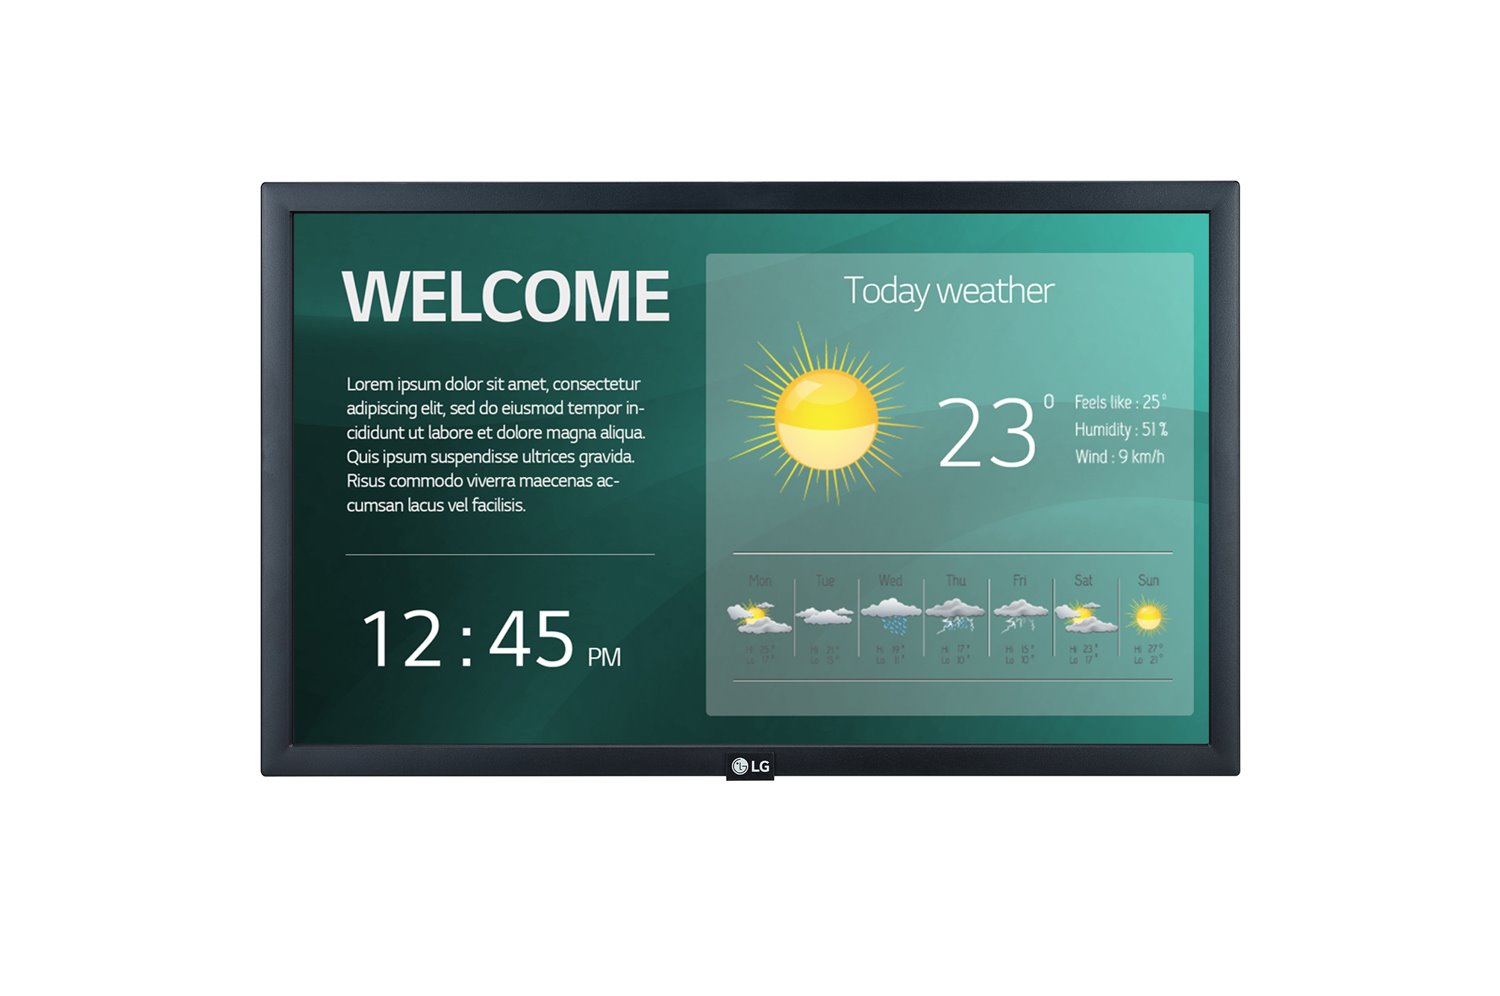 LG Digital Display (Sm5ke) 22" FHD Led, 250Nits, Hdmi, Usb 2.0, Lan, Web O/S, 16/7, 3YR